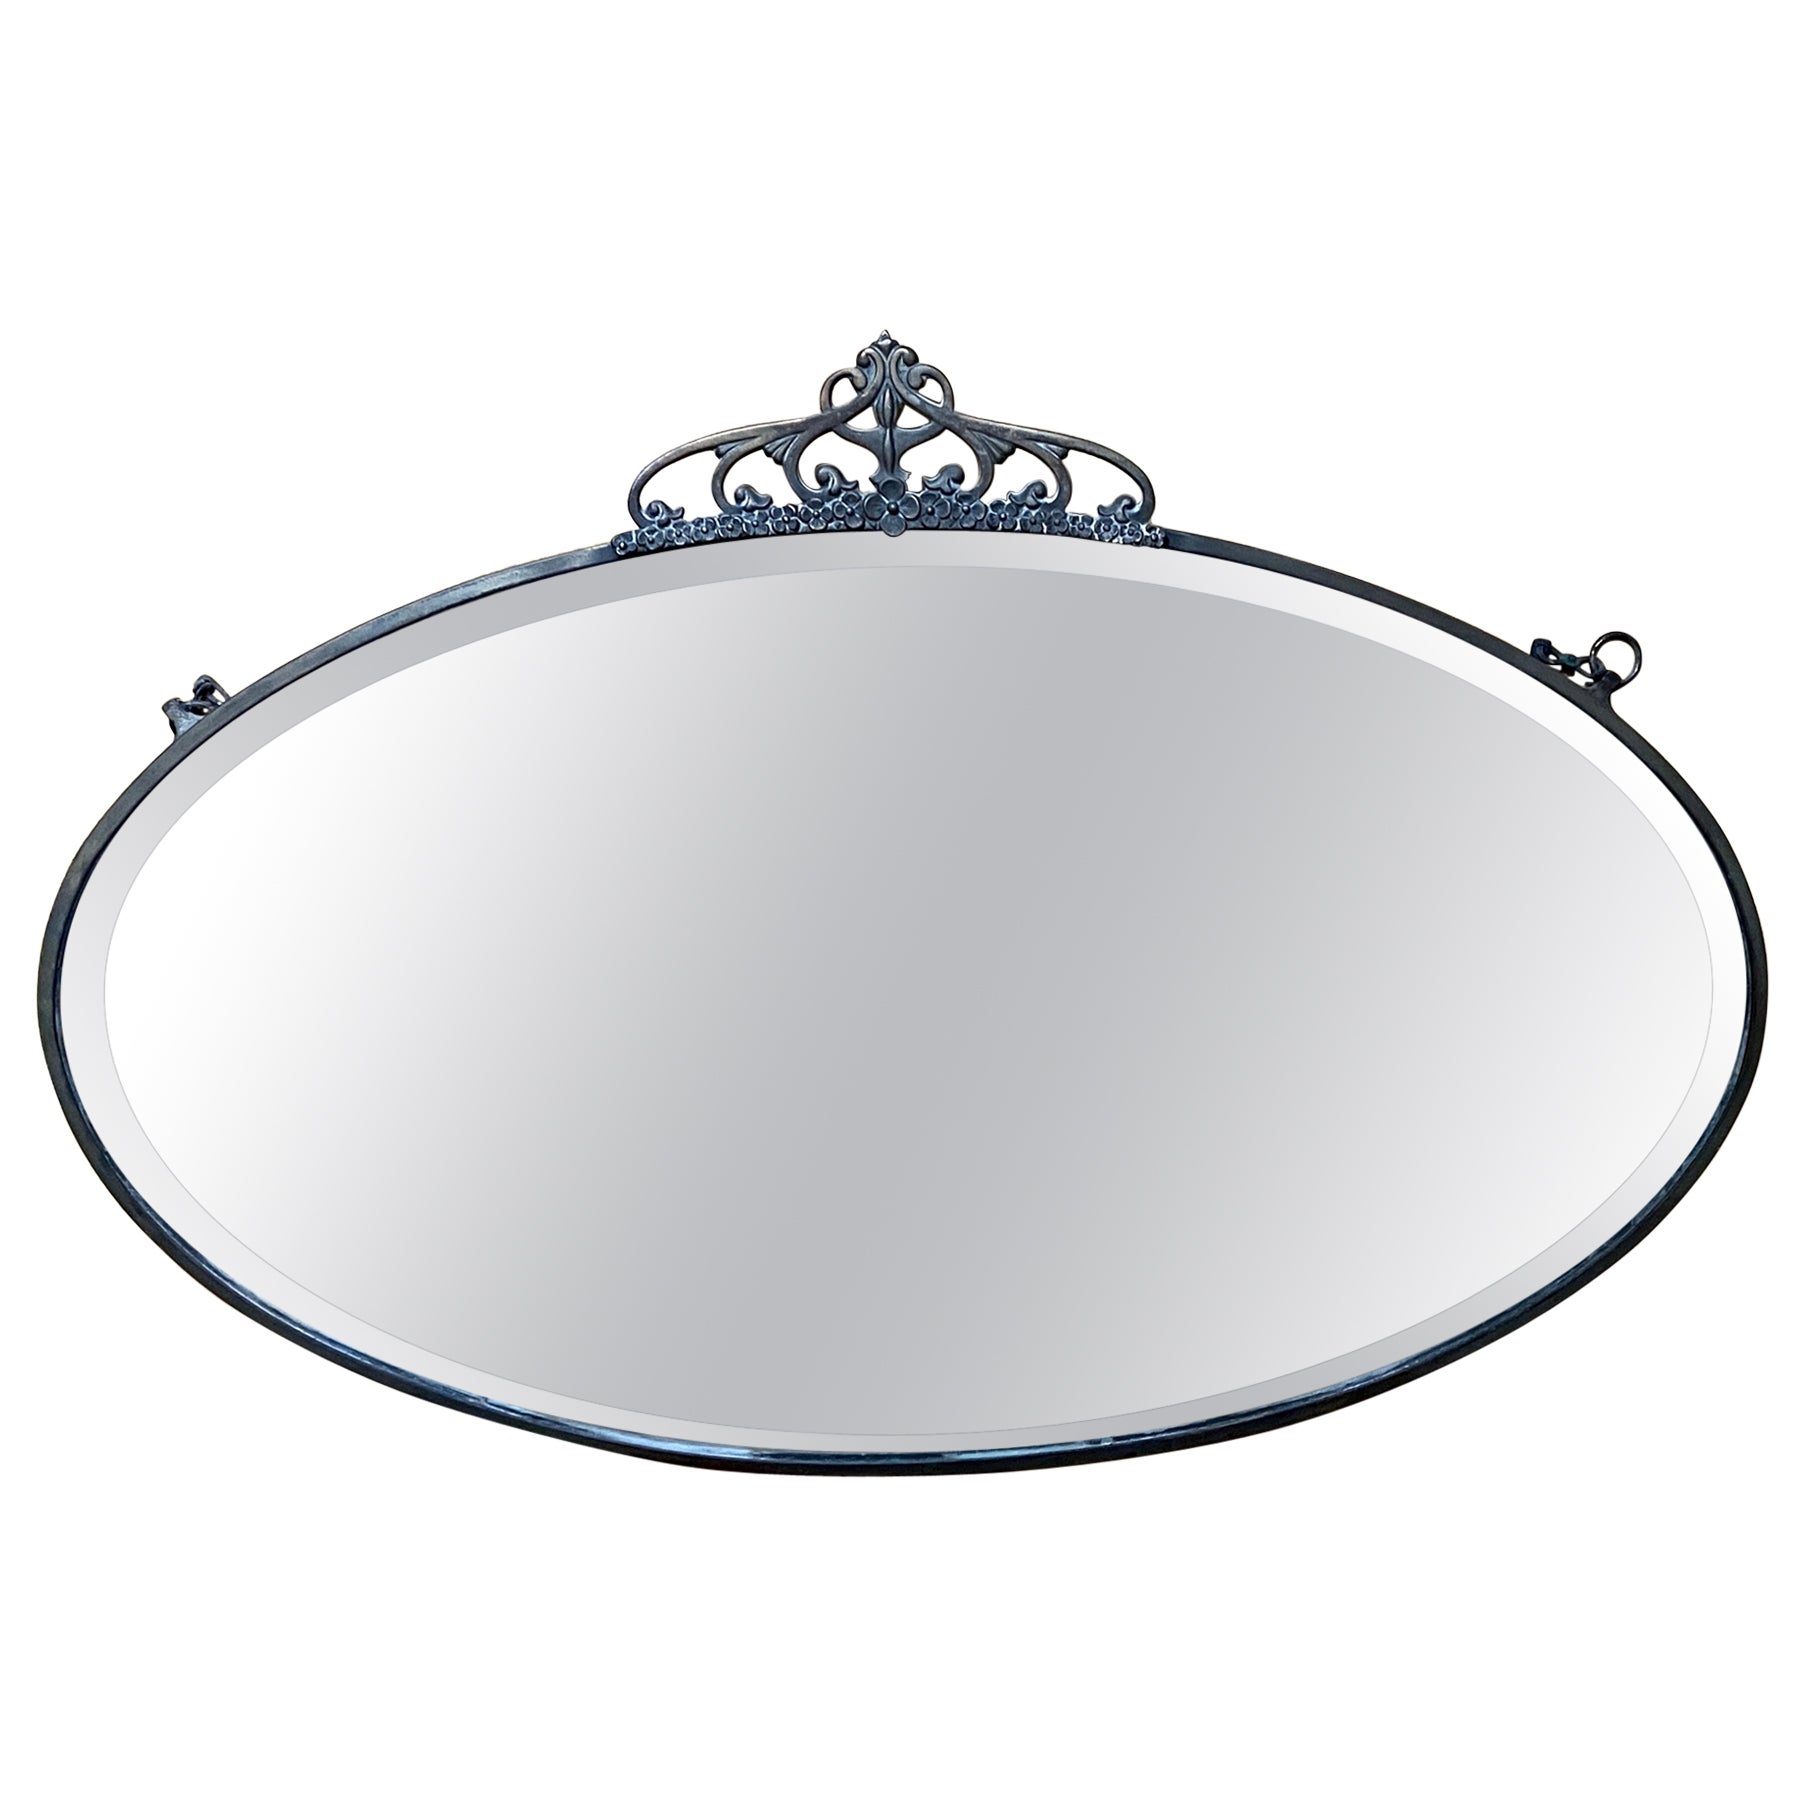 Ovaler antiker Jugendstilspiegel mit dünnem Messingrahmen und Krone aus Messing 